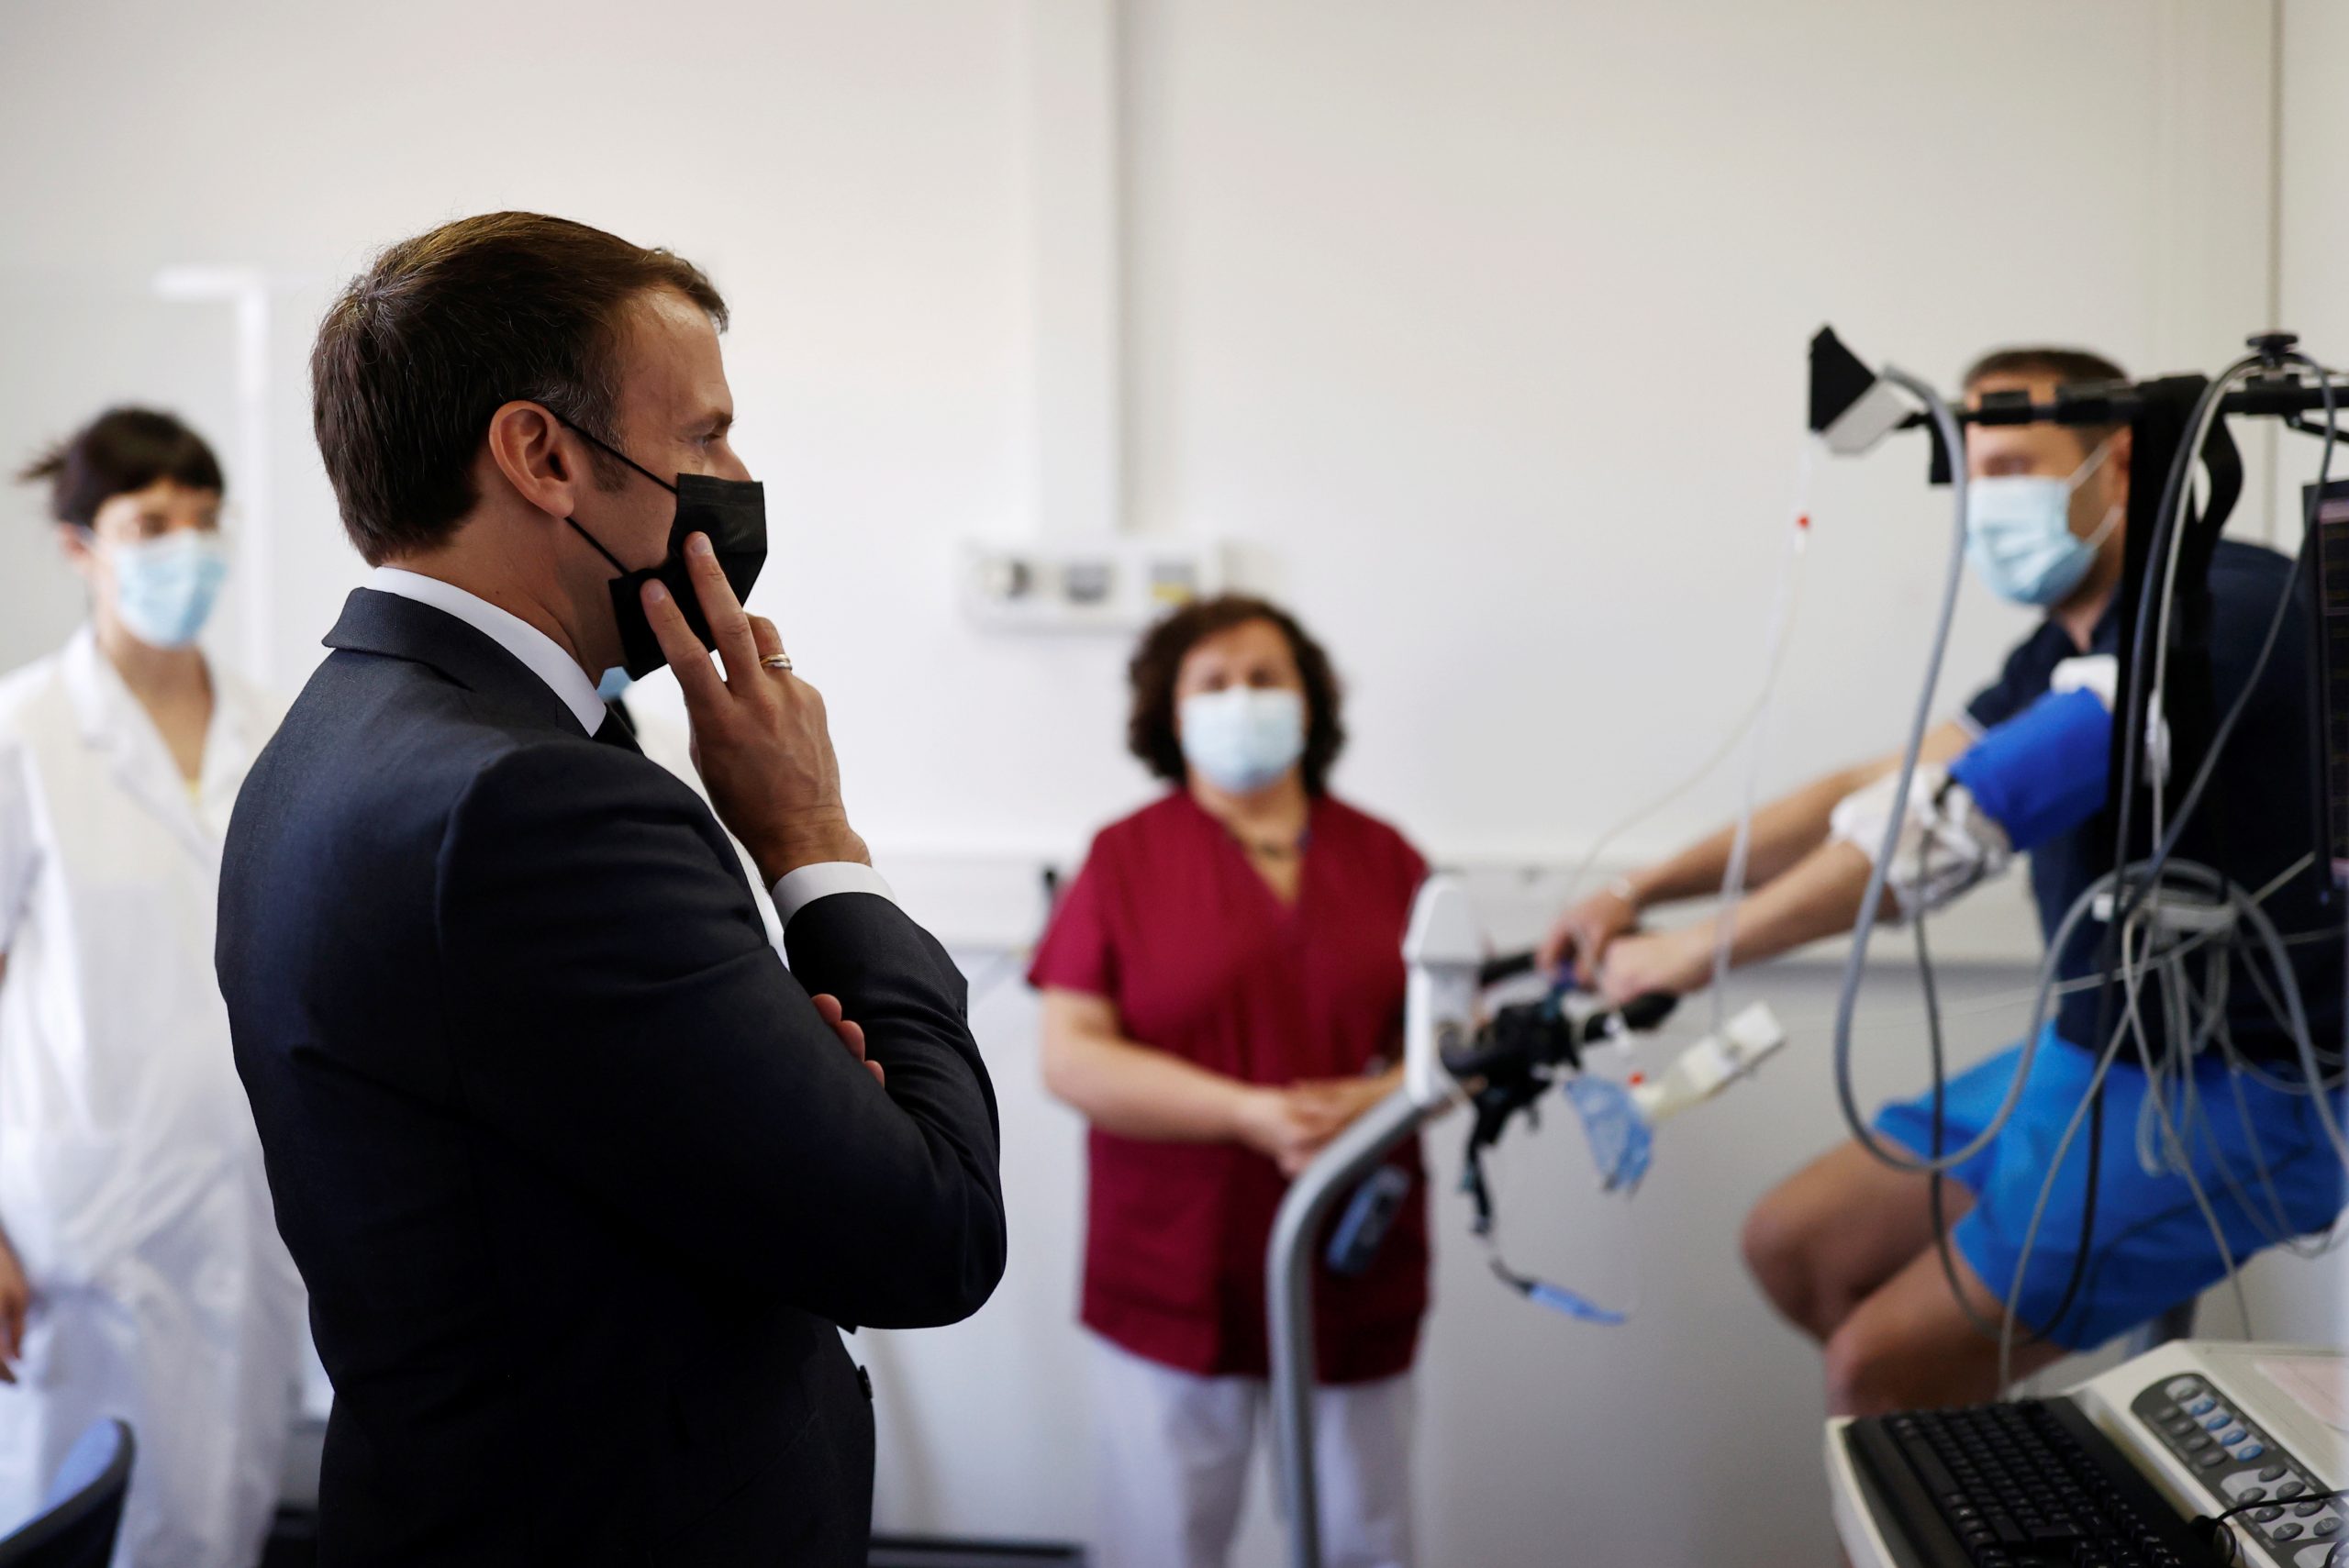 President Macron praat met de medische staf van een ziekenhuis in de buurt van Parijs. Foto: EPA/Christian Hartmann